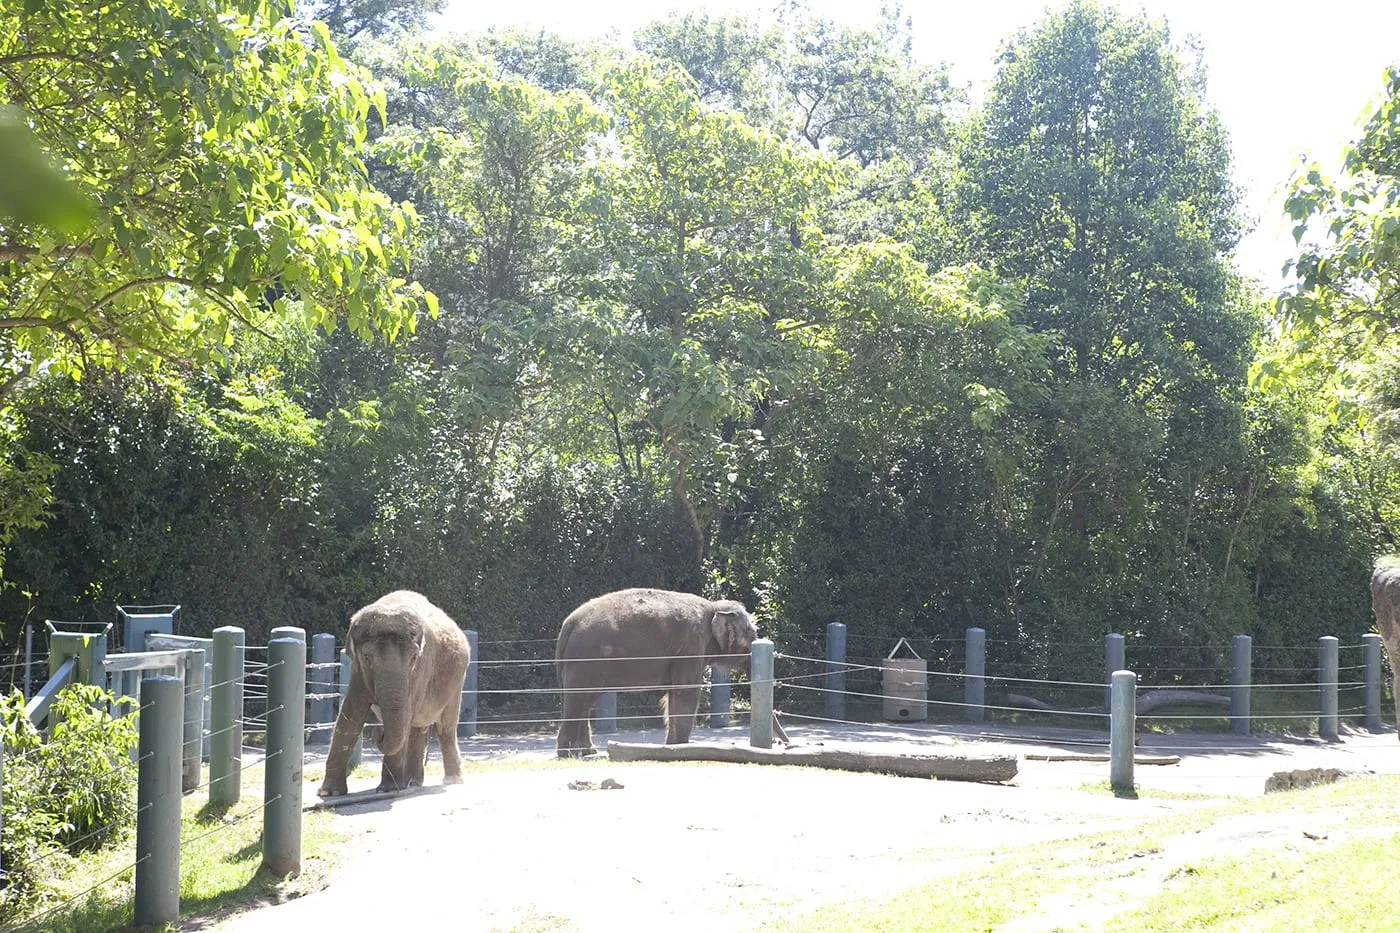 Elephants at Woodland Park Zoo in Seattle, Washington